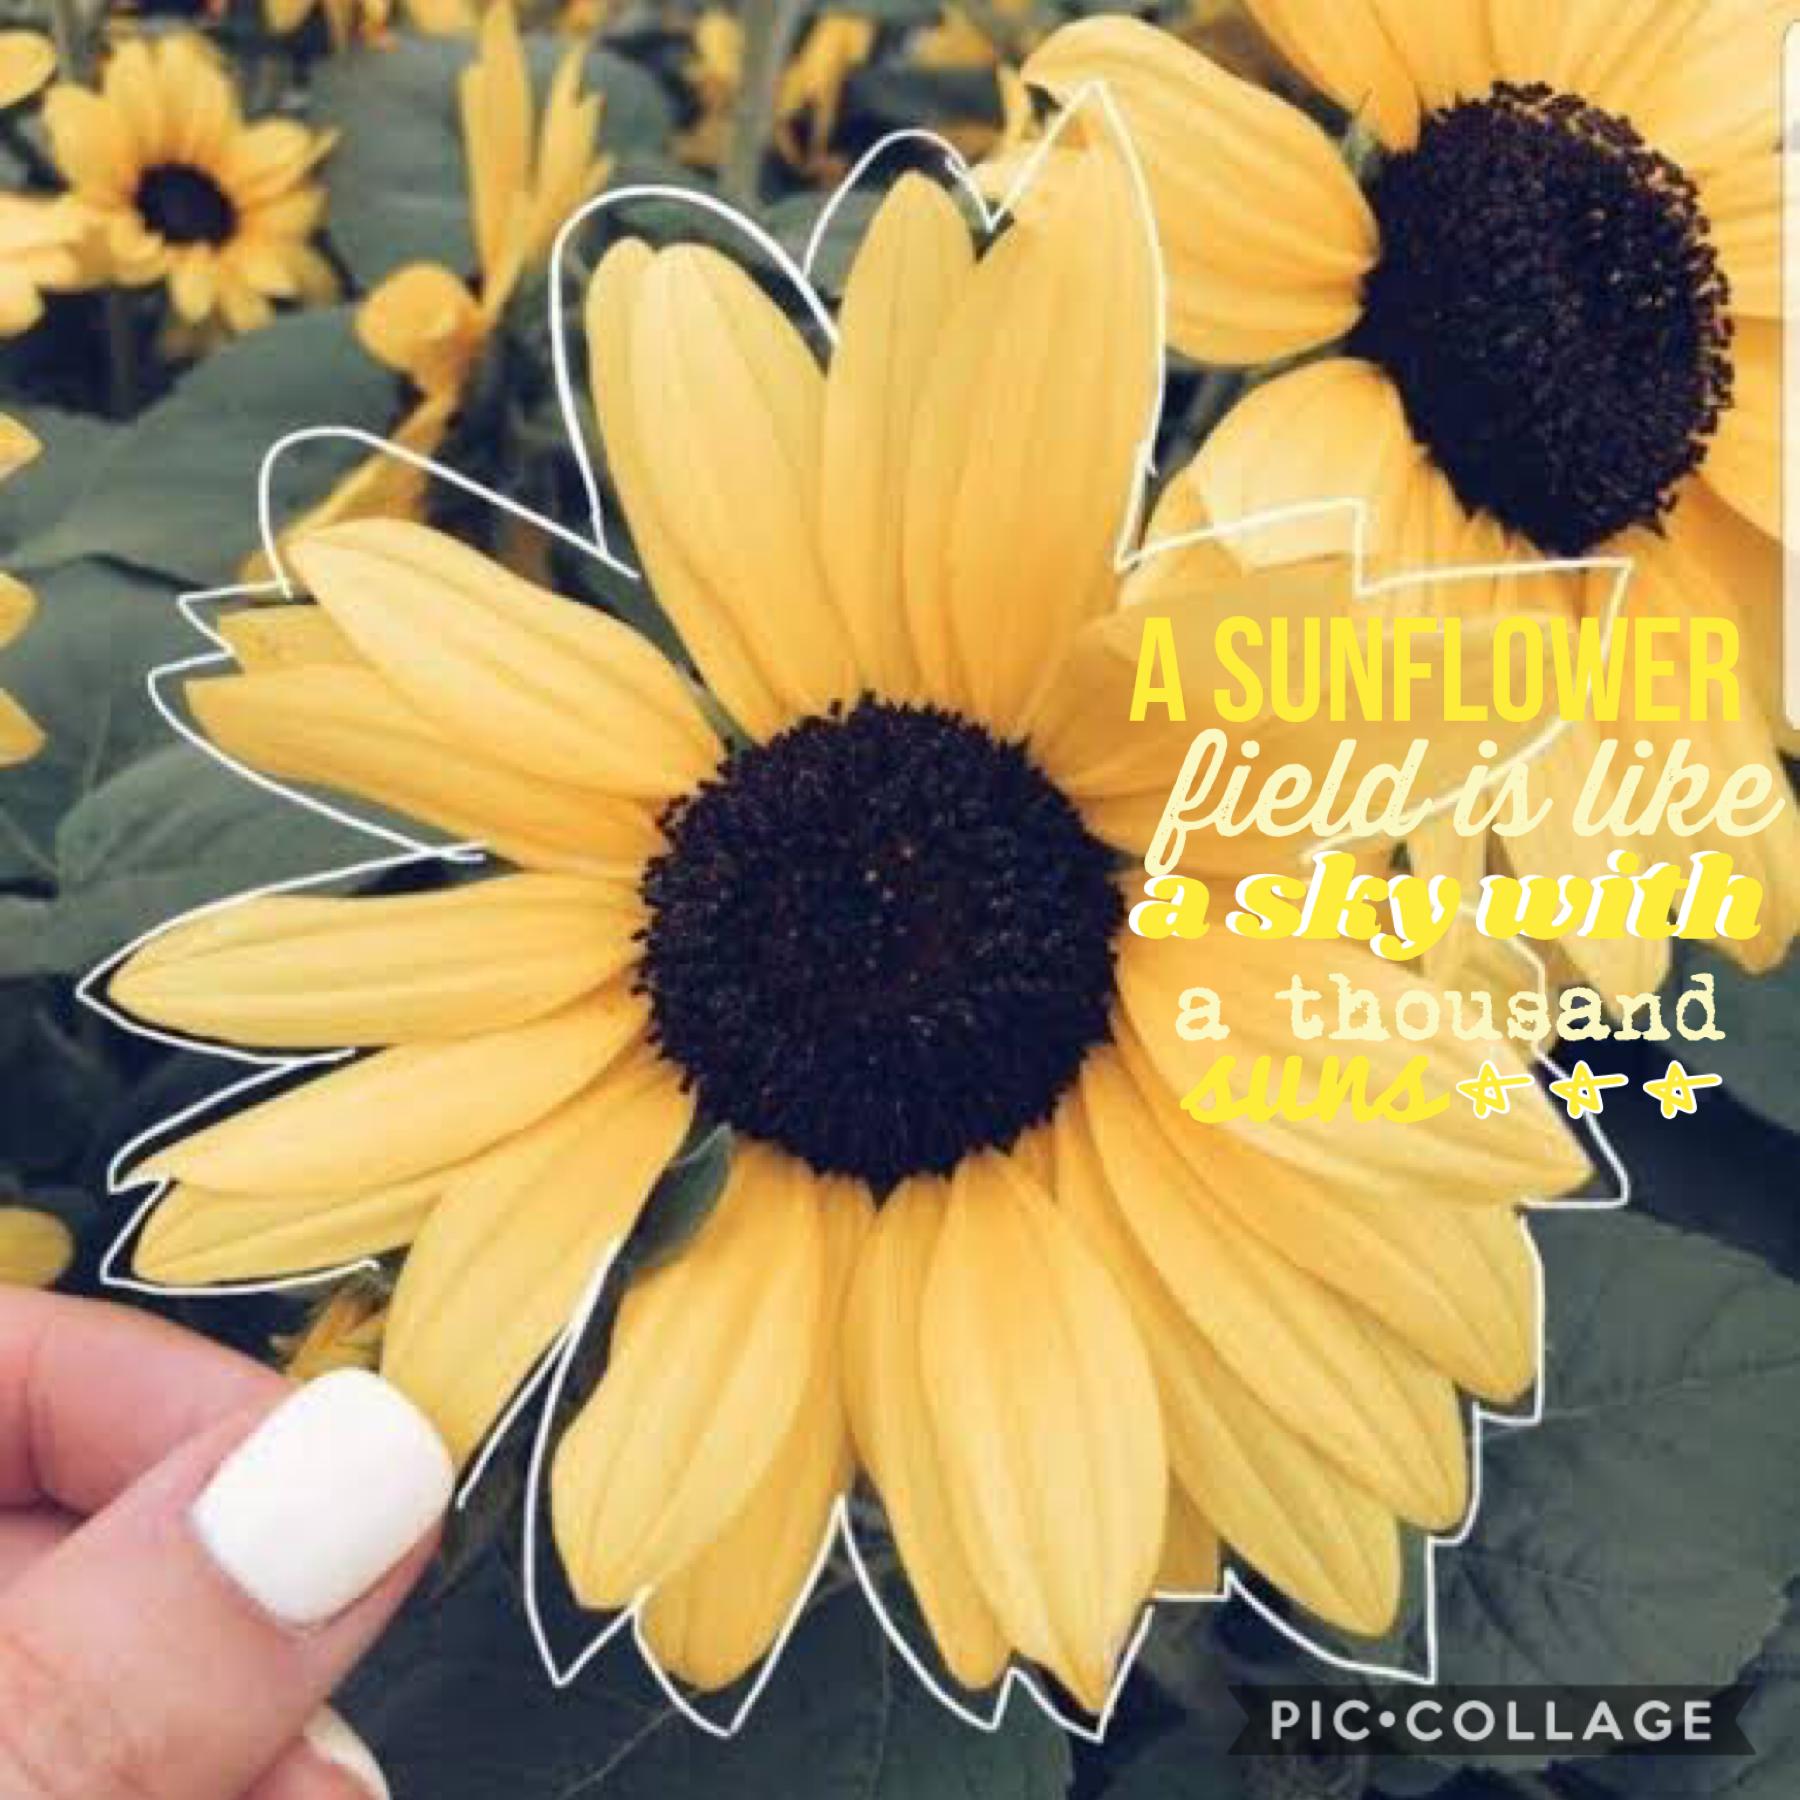 I love sunflowers 🌻QOTD: Favourite flower
“A sunflower is like a sky with a thousand suns”